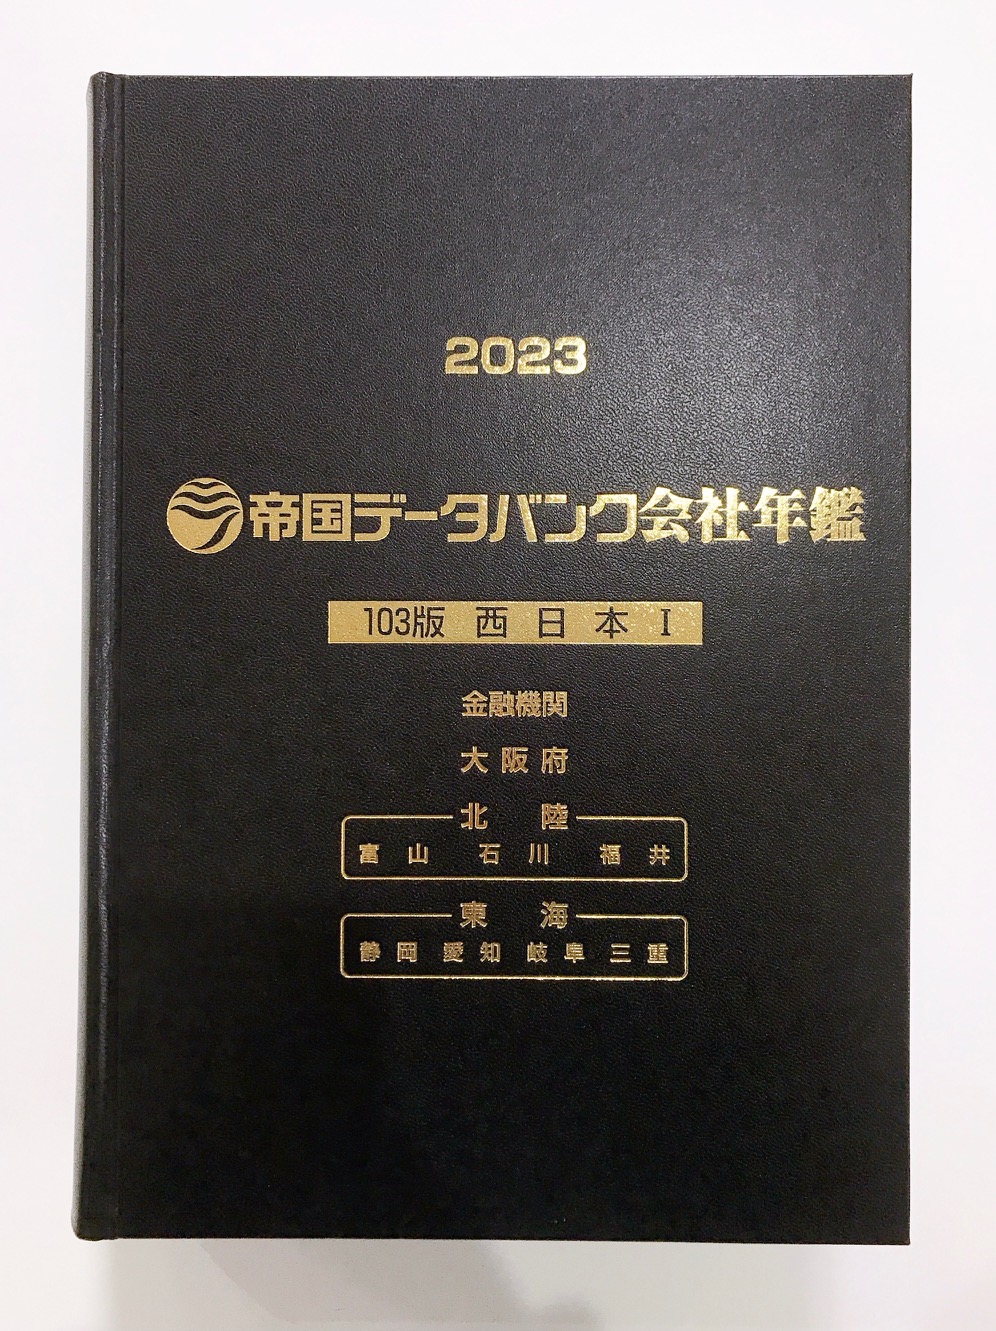 帝国データバンク 会社年鑑 2023-